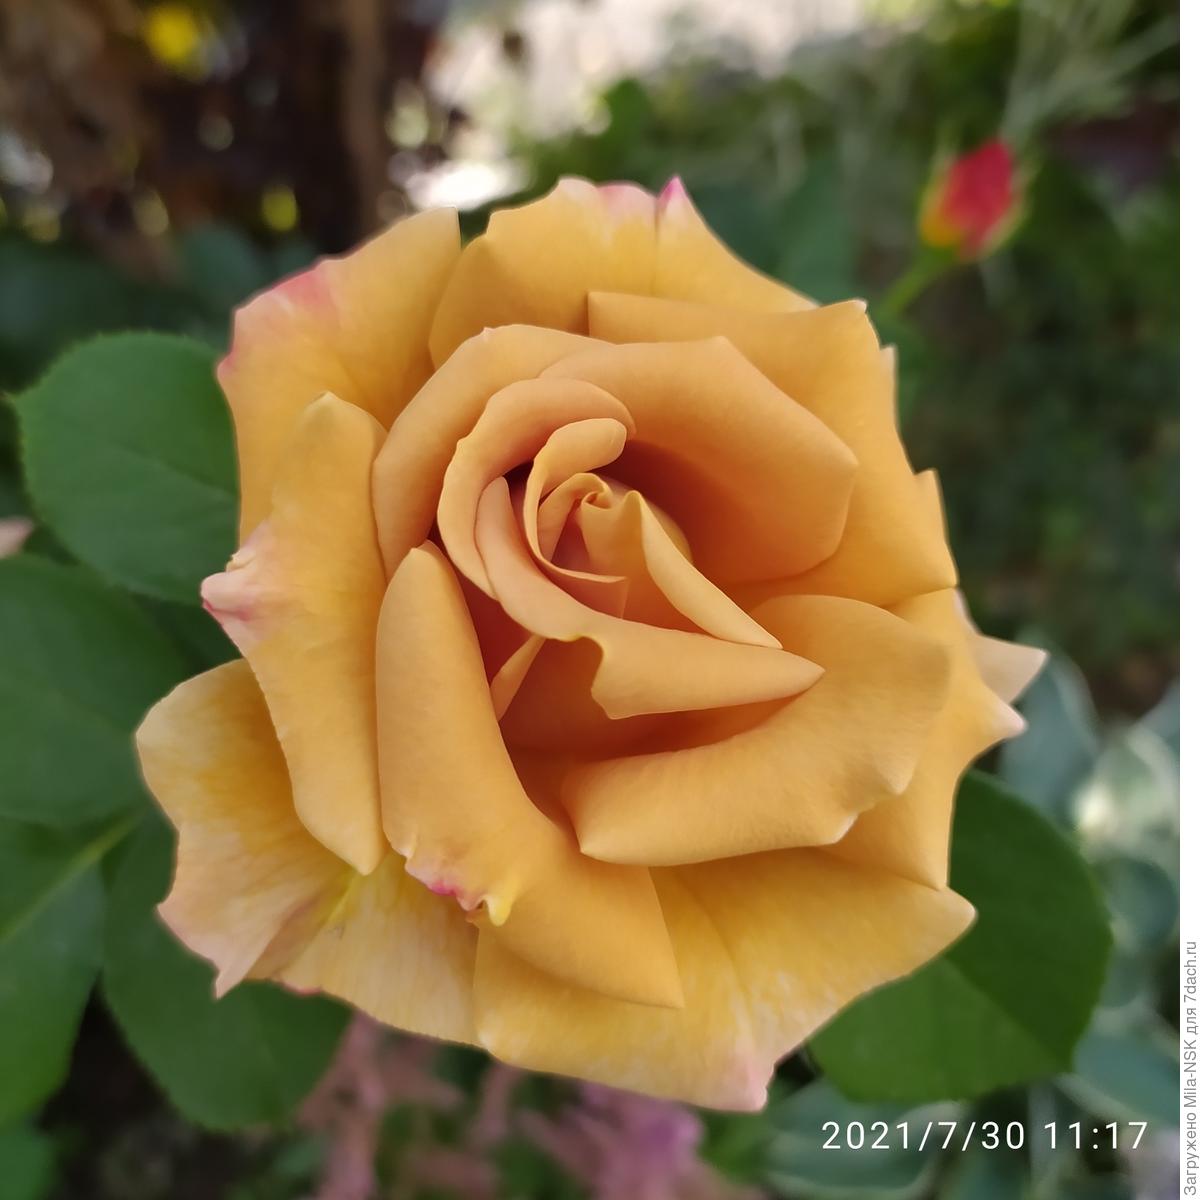 Хани дижон роза